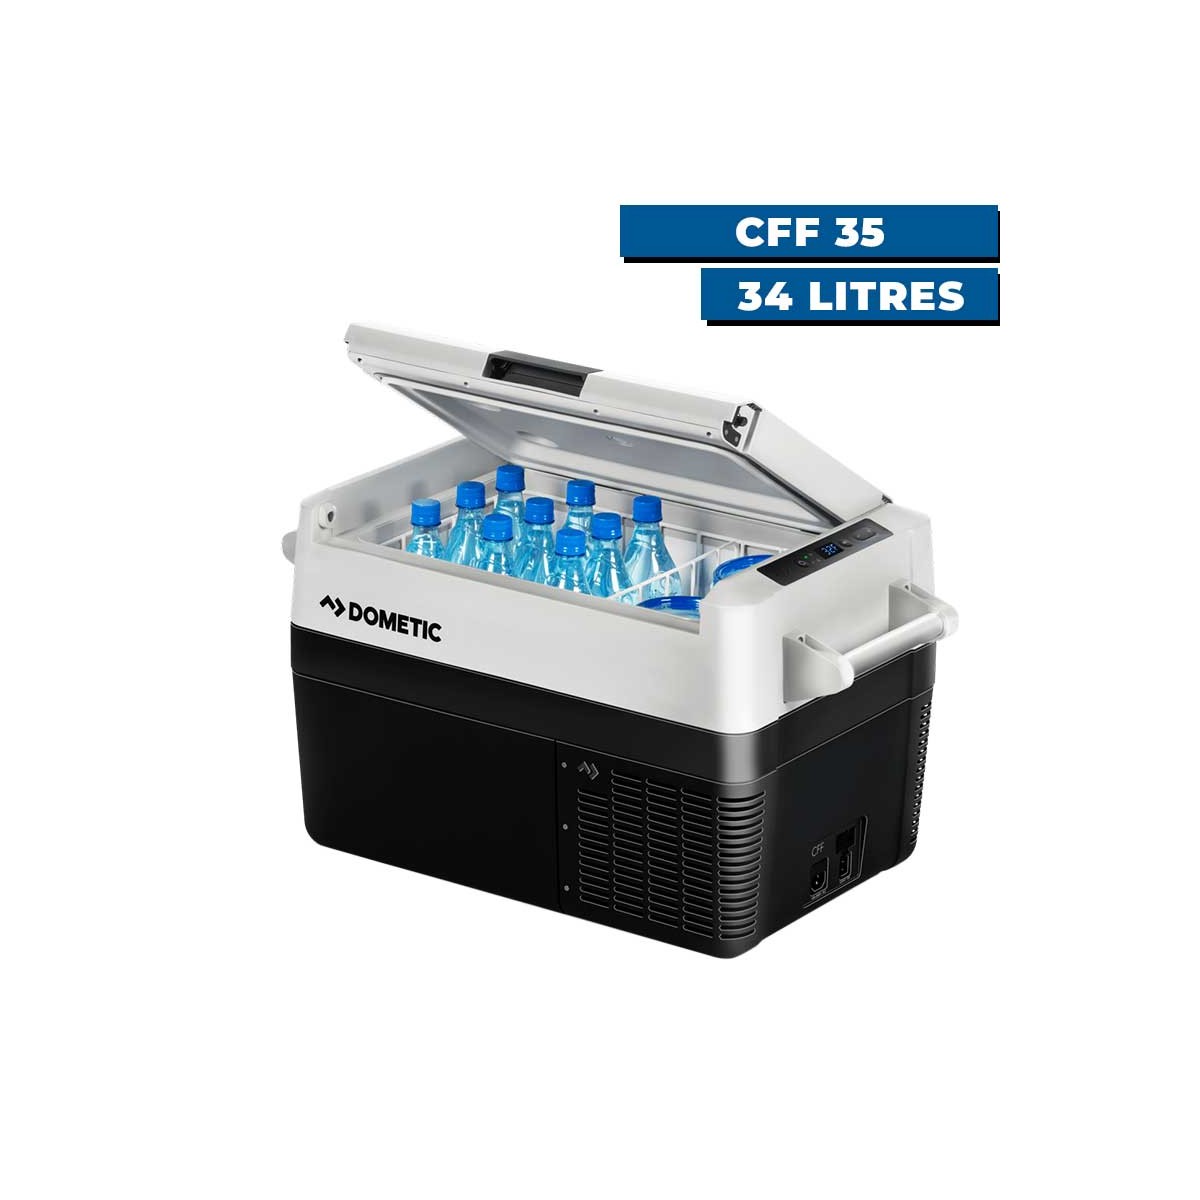 Glacière à compresseur Dometic CoolFreeze CFF35 - 34 litres